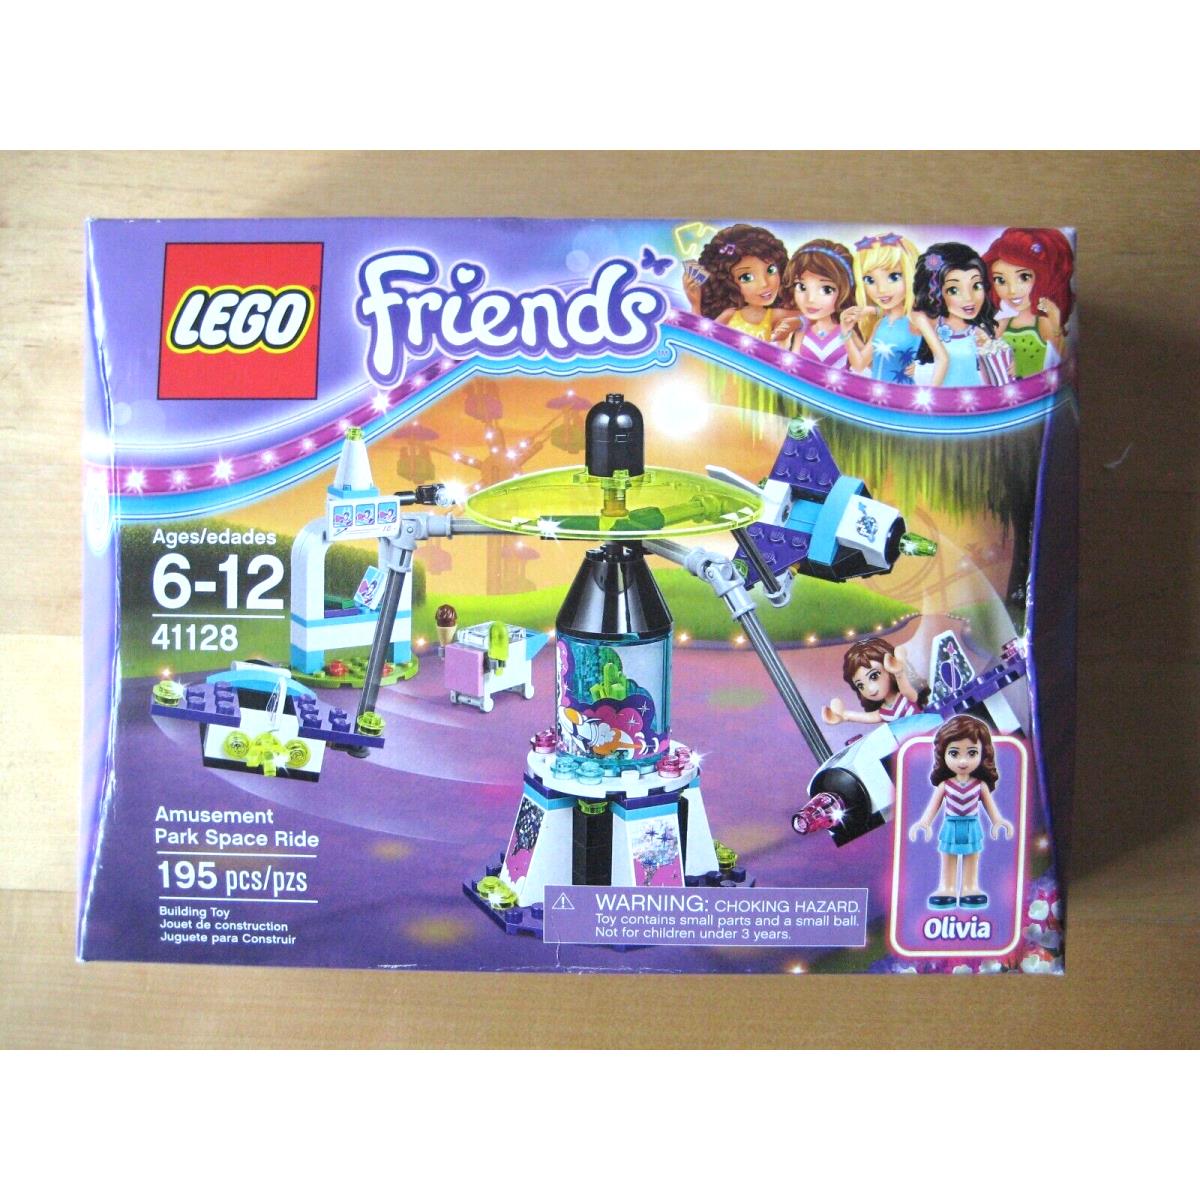 Lego Friends 41128 Amusement Park Space Ride